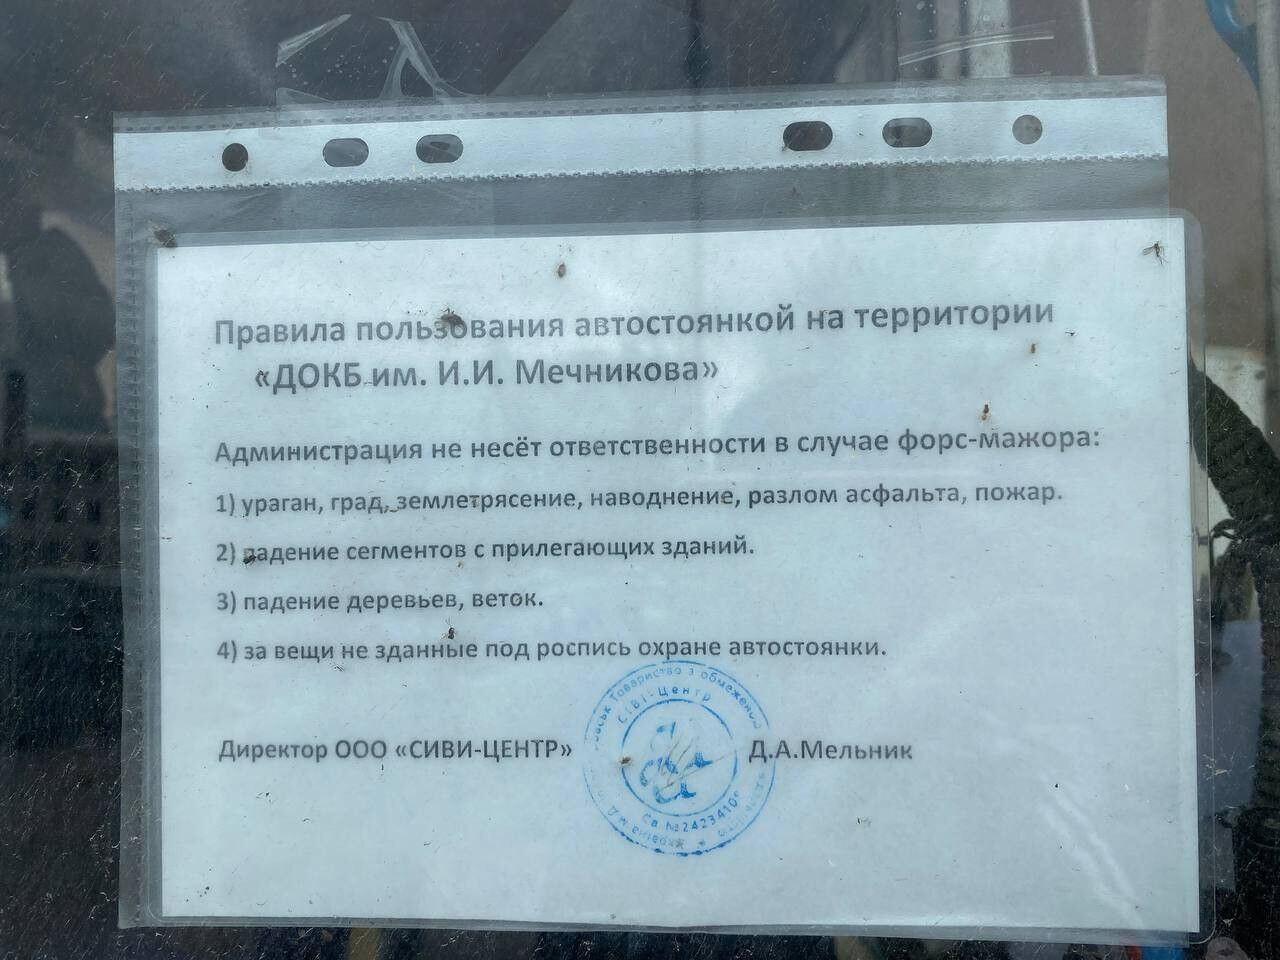 Лікарню Мечникова запідозрили в "схемі" із заробітком на паркуванні авто: ЗМІ розповіли, що не так і які загрози